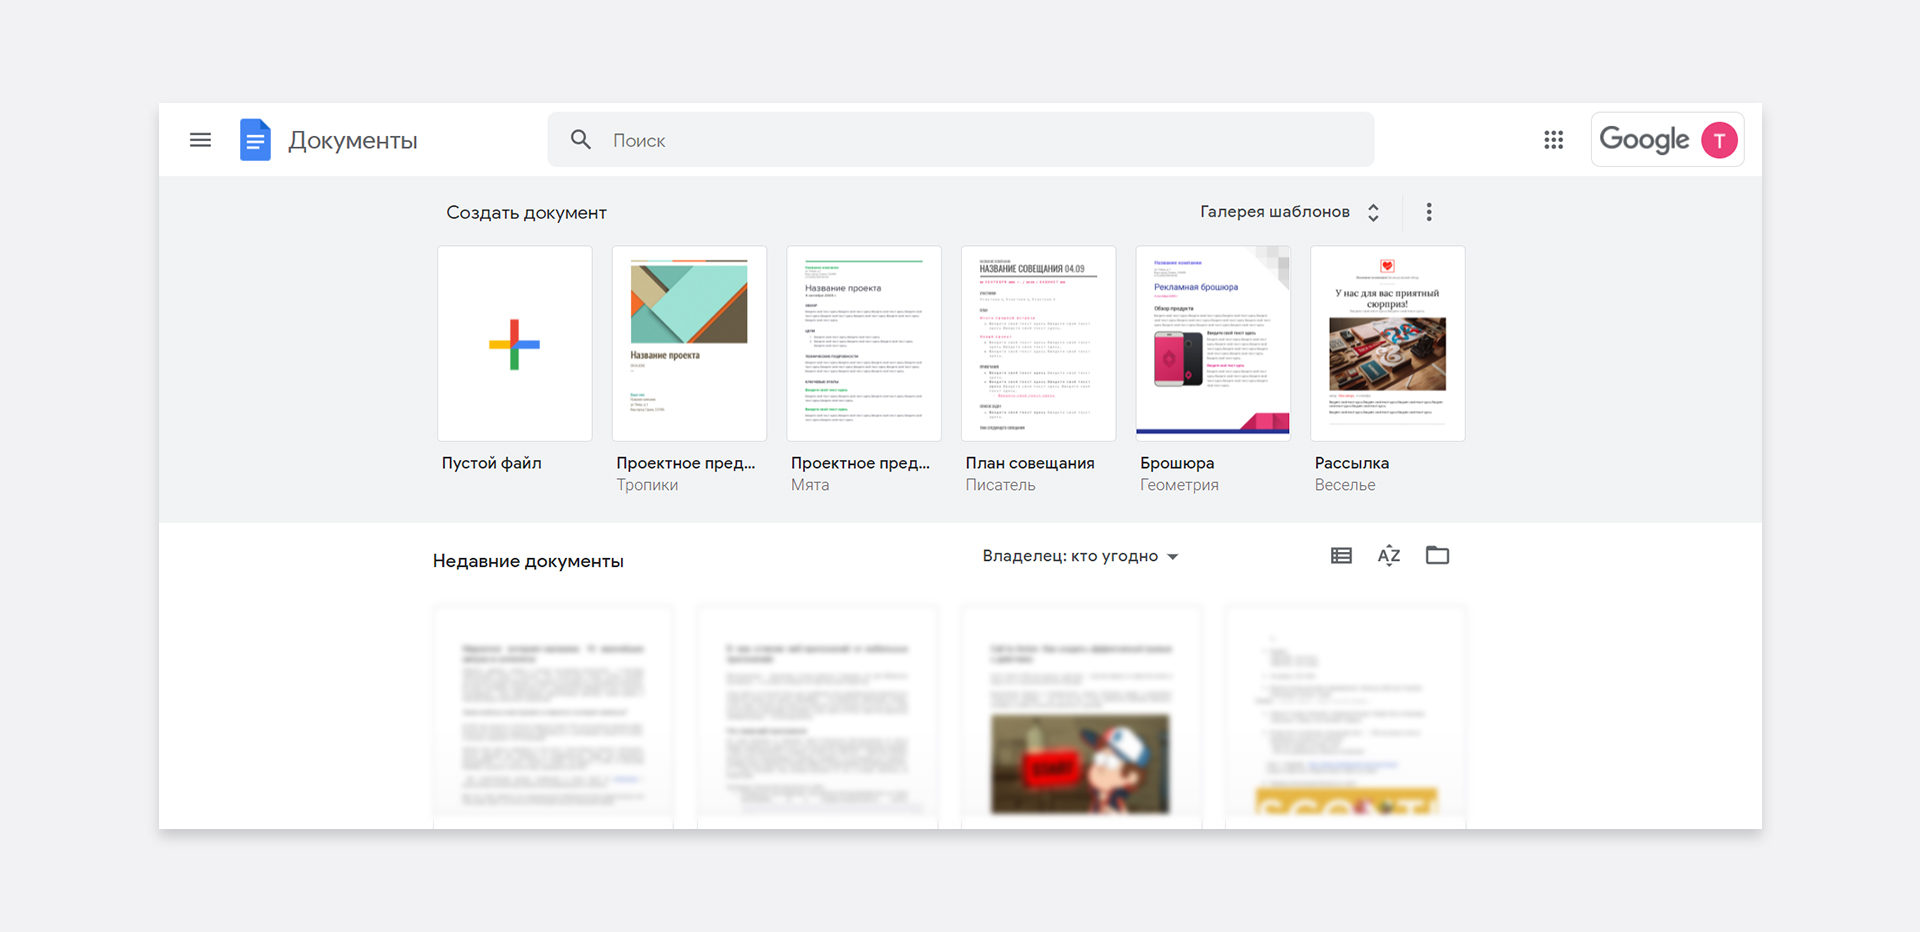 Google Docs - один із найвідоміших прикладів веб-додатку.